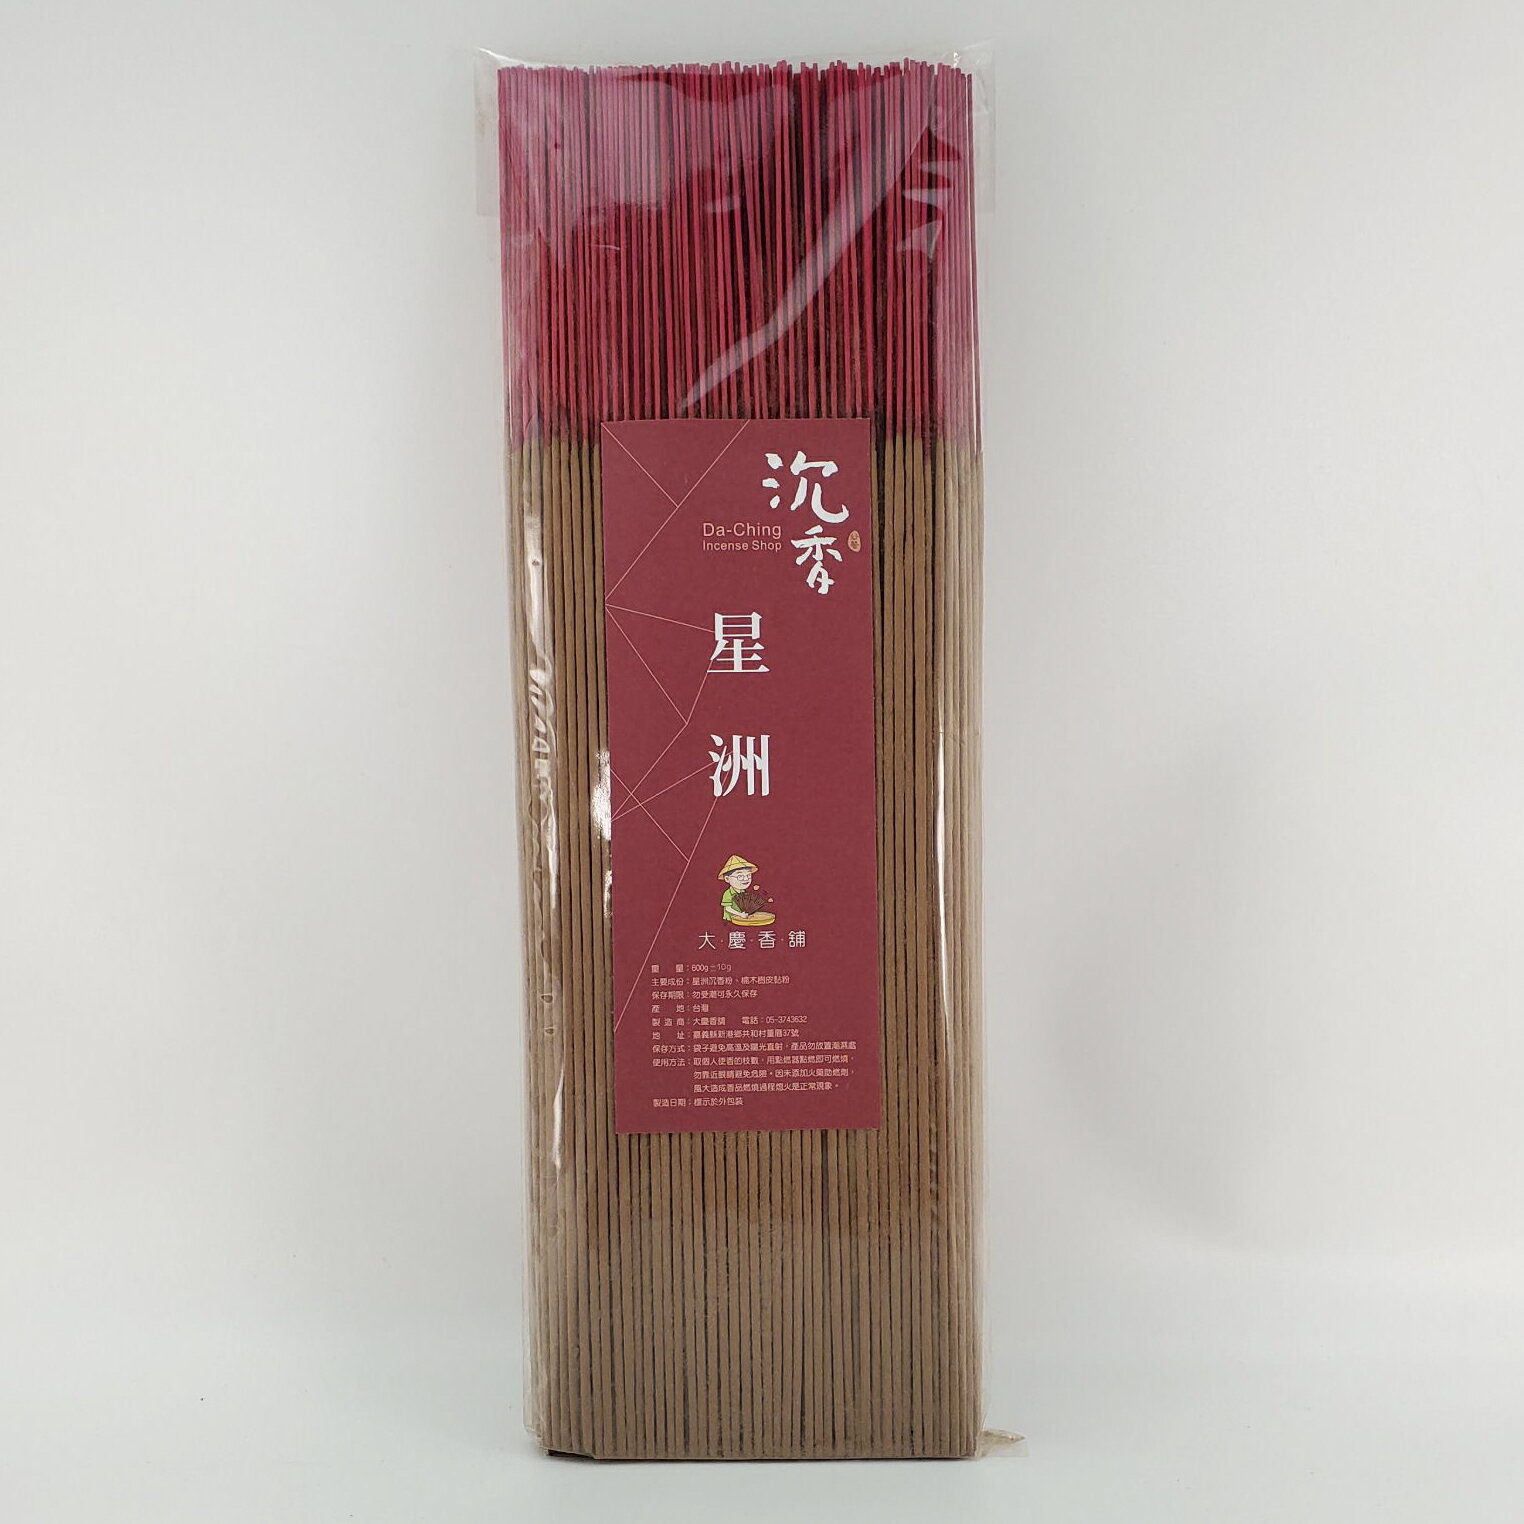 立香 沉香類 星洲沉香 (一尺三)台灣製造 天然 安全 環保